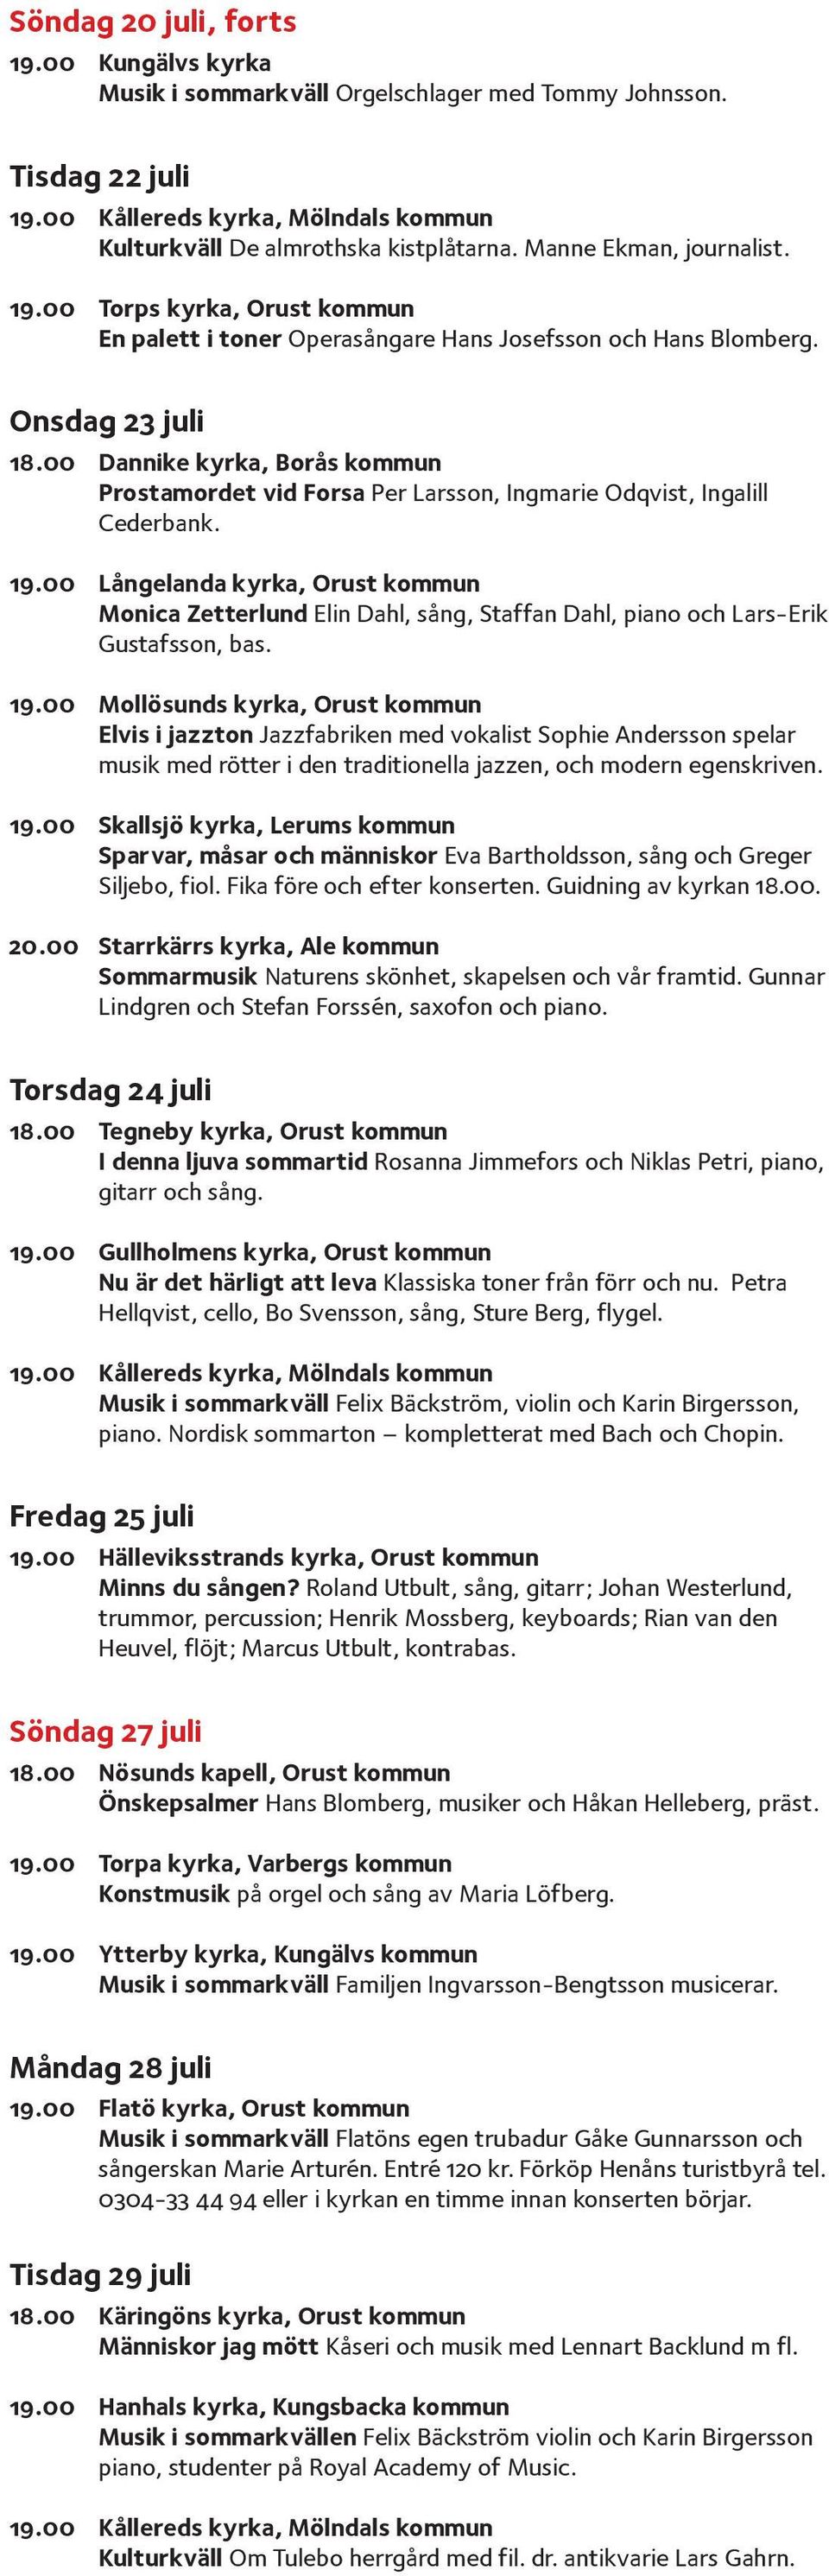 00 Långelanda kyrka, Orust kommun Monica Zetterlund Elin Dahl, sång, Staffan Dahl, piano och Lars-Erik Gustafsson, bas. 19.